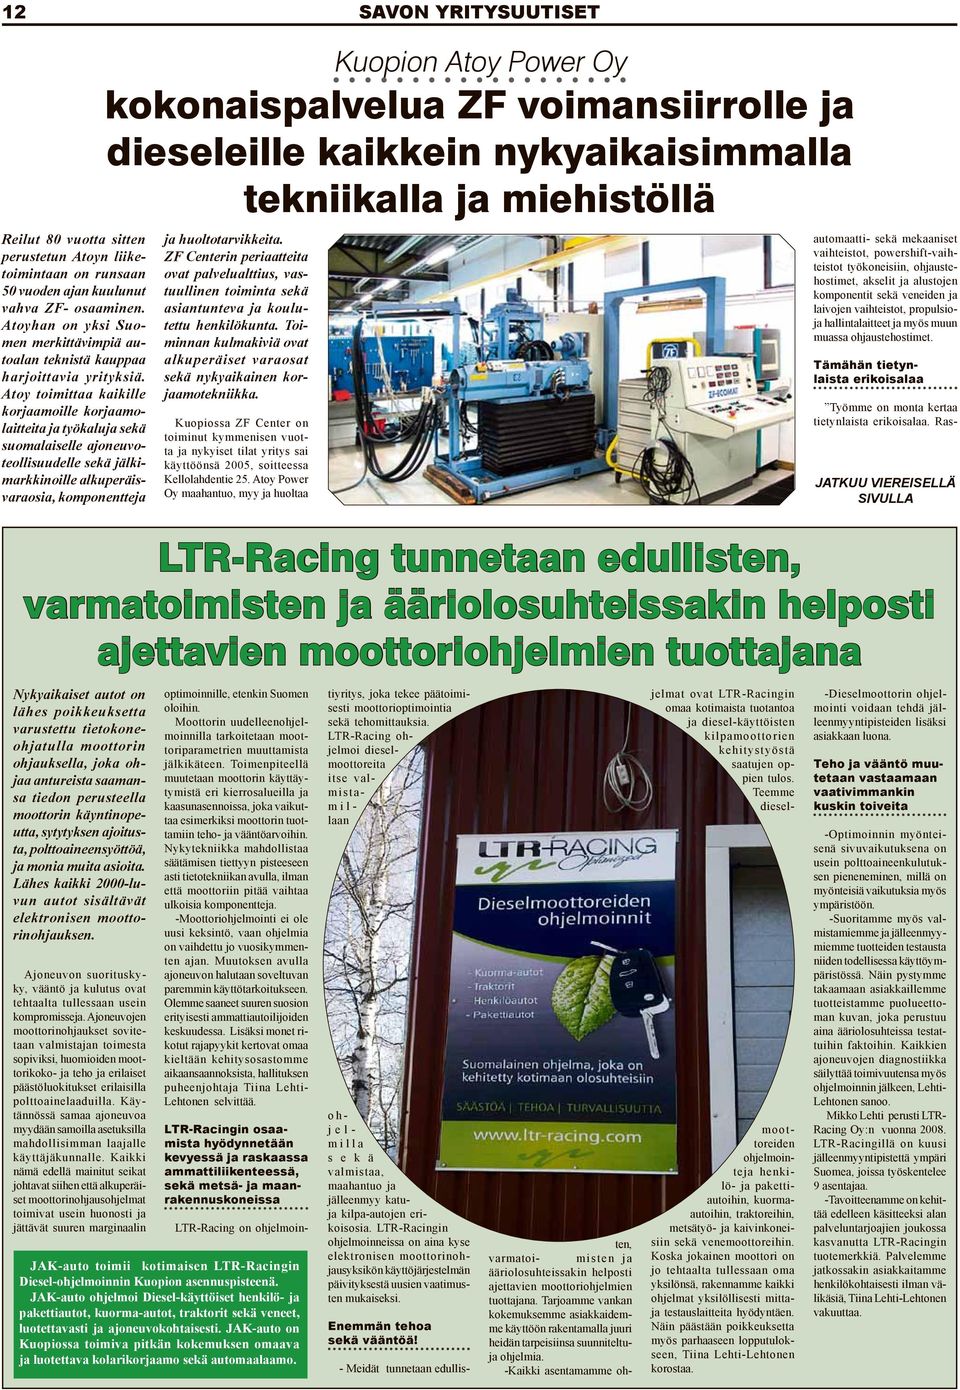 Atoy toimittaa kaikille korjaamoille korjaamolaitteita ja työkaluja sekä suomalaiselle ajoneuvoteollisuudelle sekä jälkimarkkinoille alkuperäisvaraosia, komponentteja LTR-Racing tunnetaan edullisten,